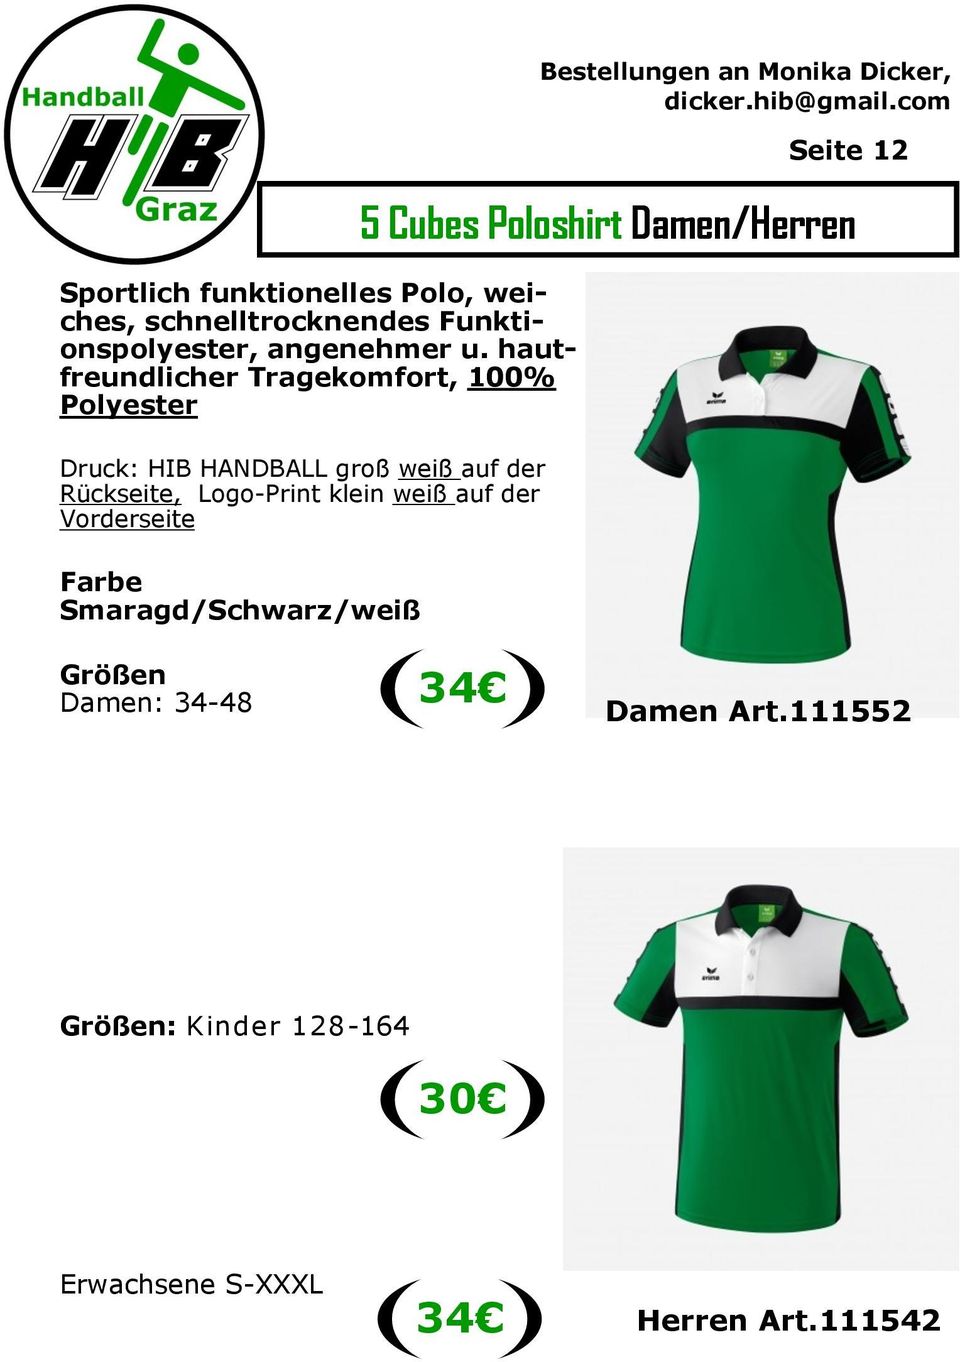 Logo-Print klein weiß auf der Vorderseite Farbe Smaragd/Schwarz/weiß Bestellungen an Monika Dicker,